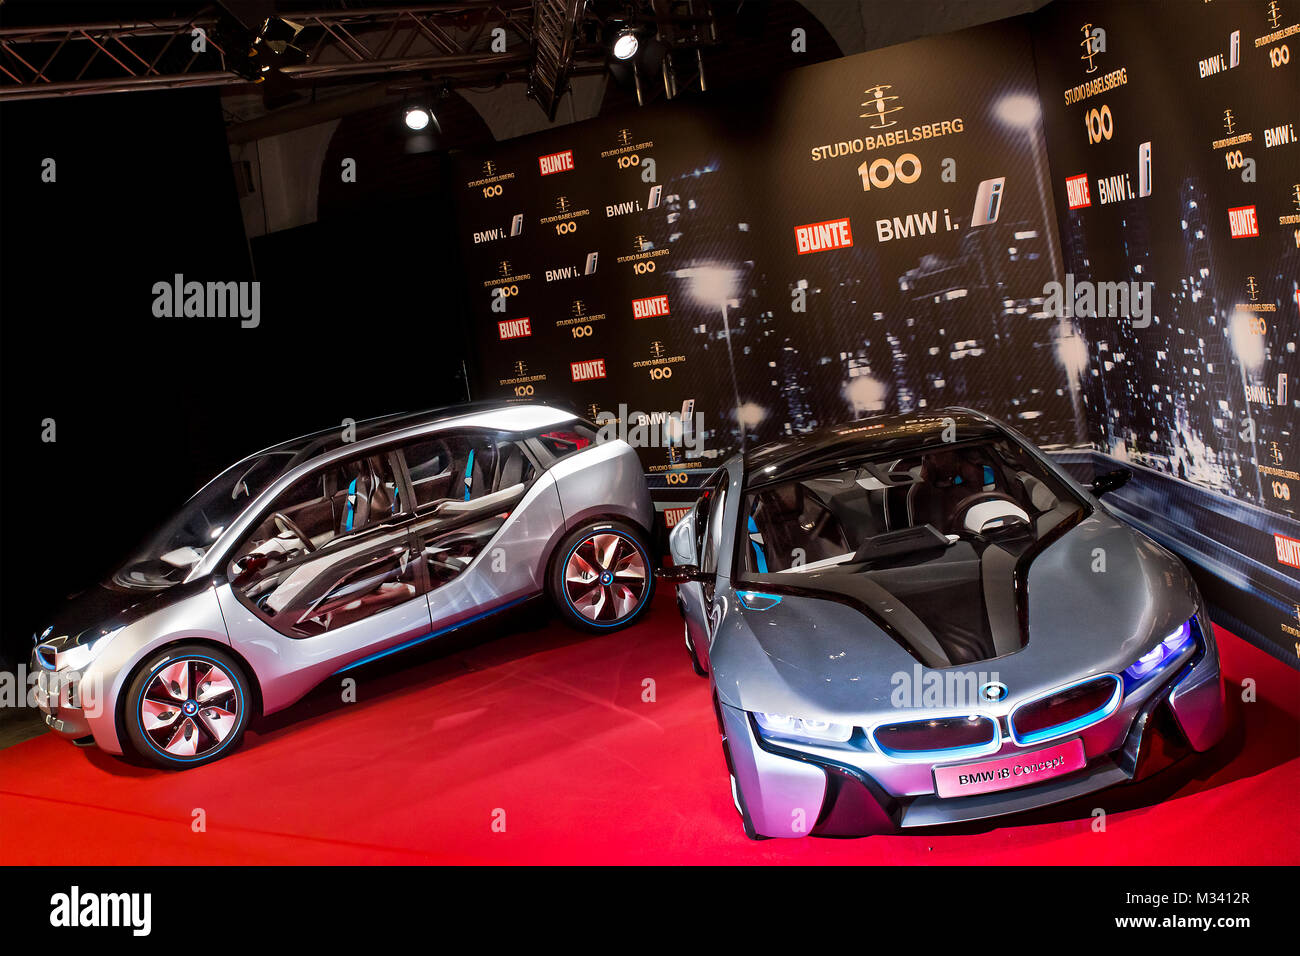 Die ausgestellten BMW i8 Conzept Autos  auf dem roten Teppich bei der 100 Jahre Studio Babelsberg-The Party in der Luckenwalder Straße 4-6 in Berlin. Stock Photo